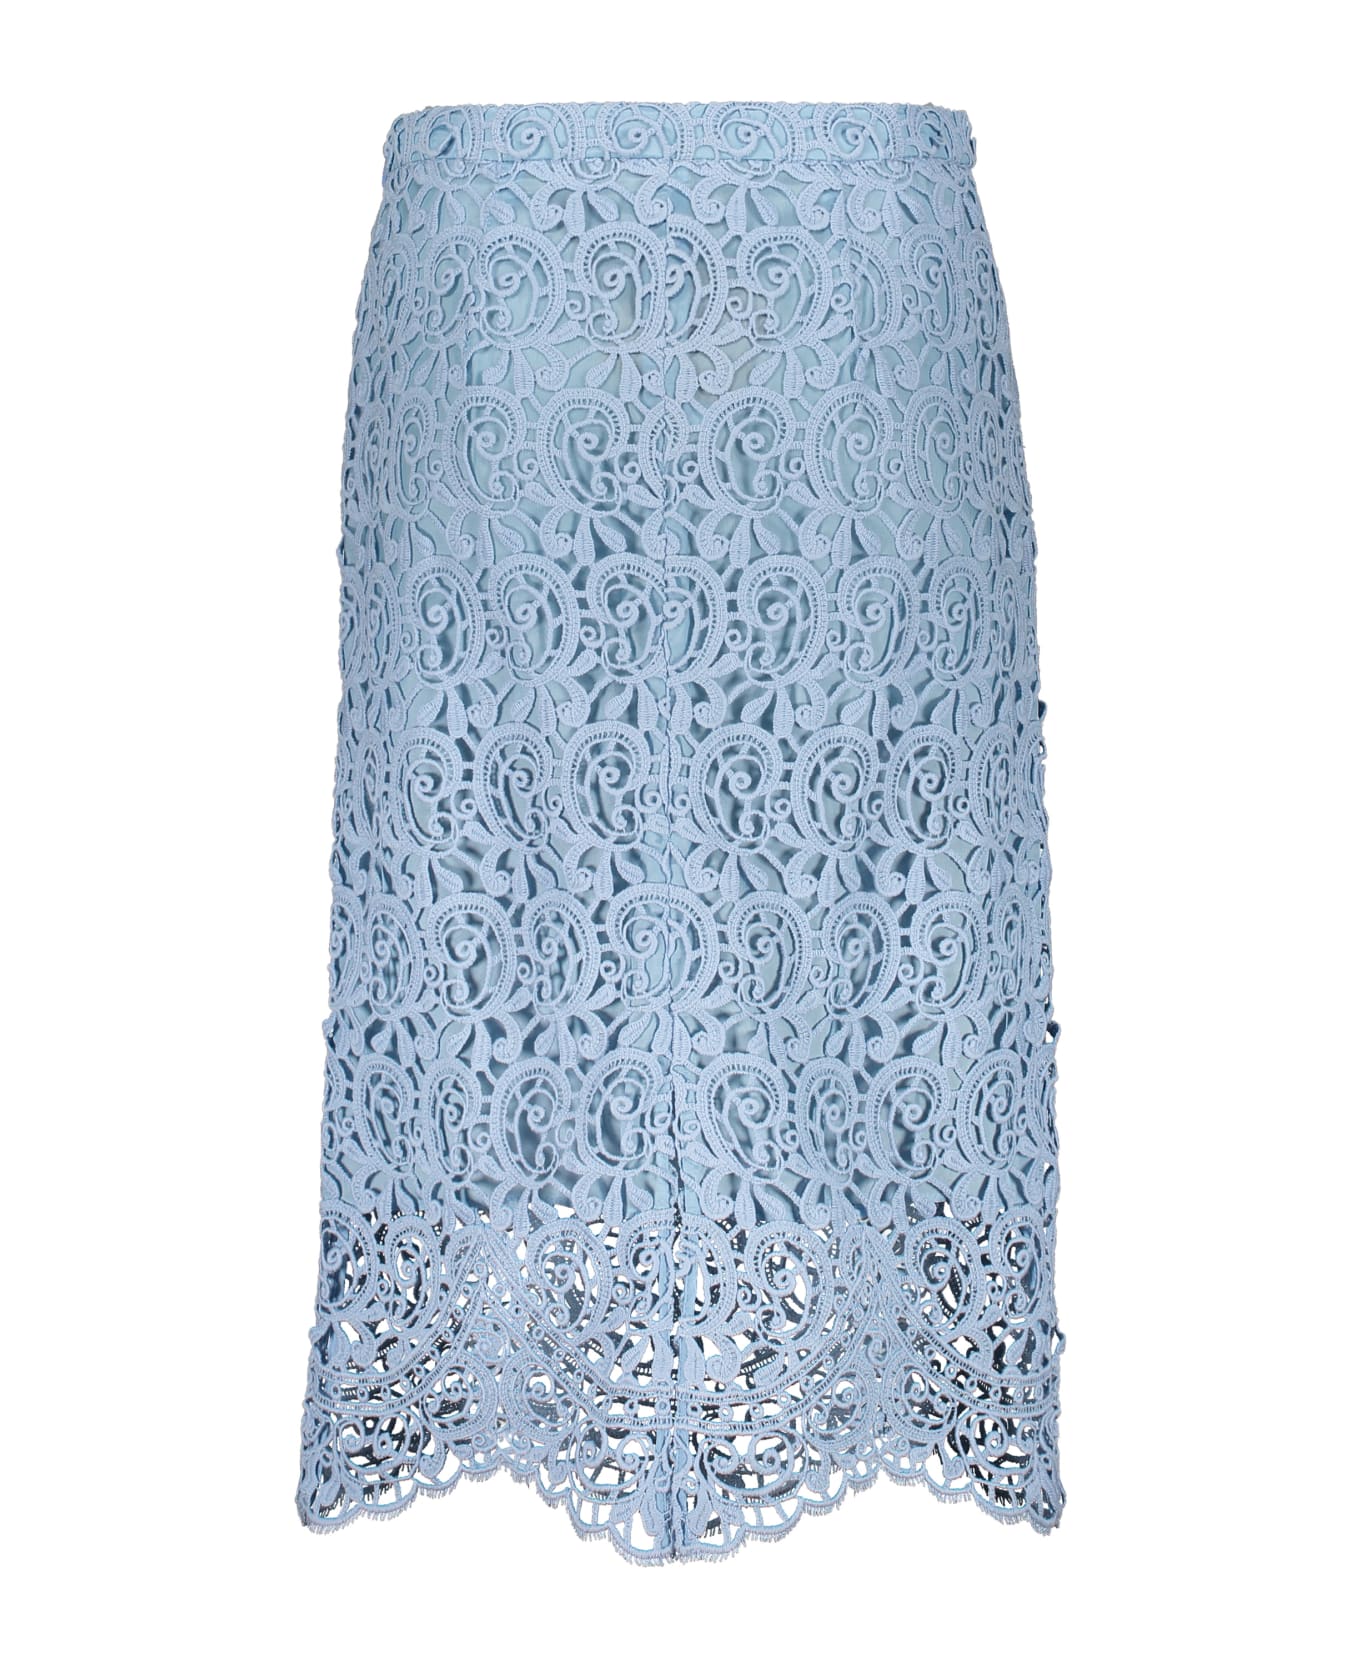 Burberry Lace Skirt - Light Blue スカート